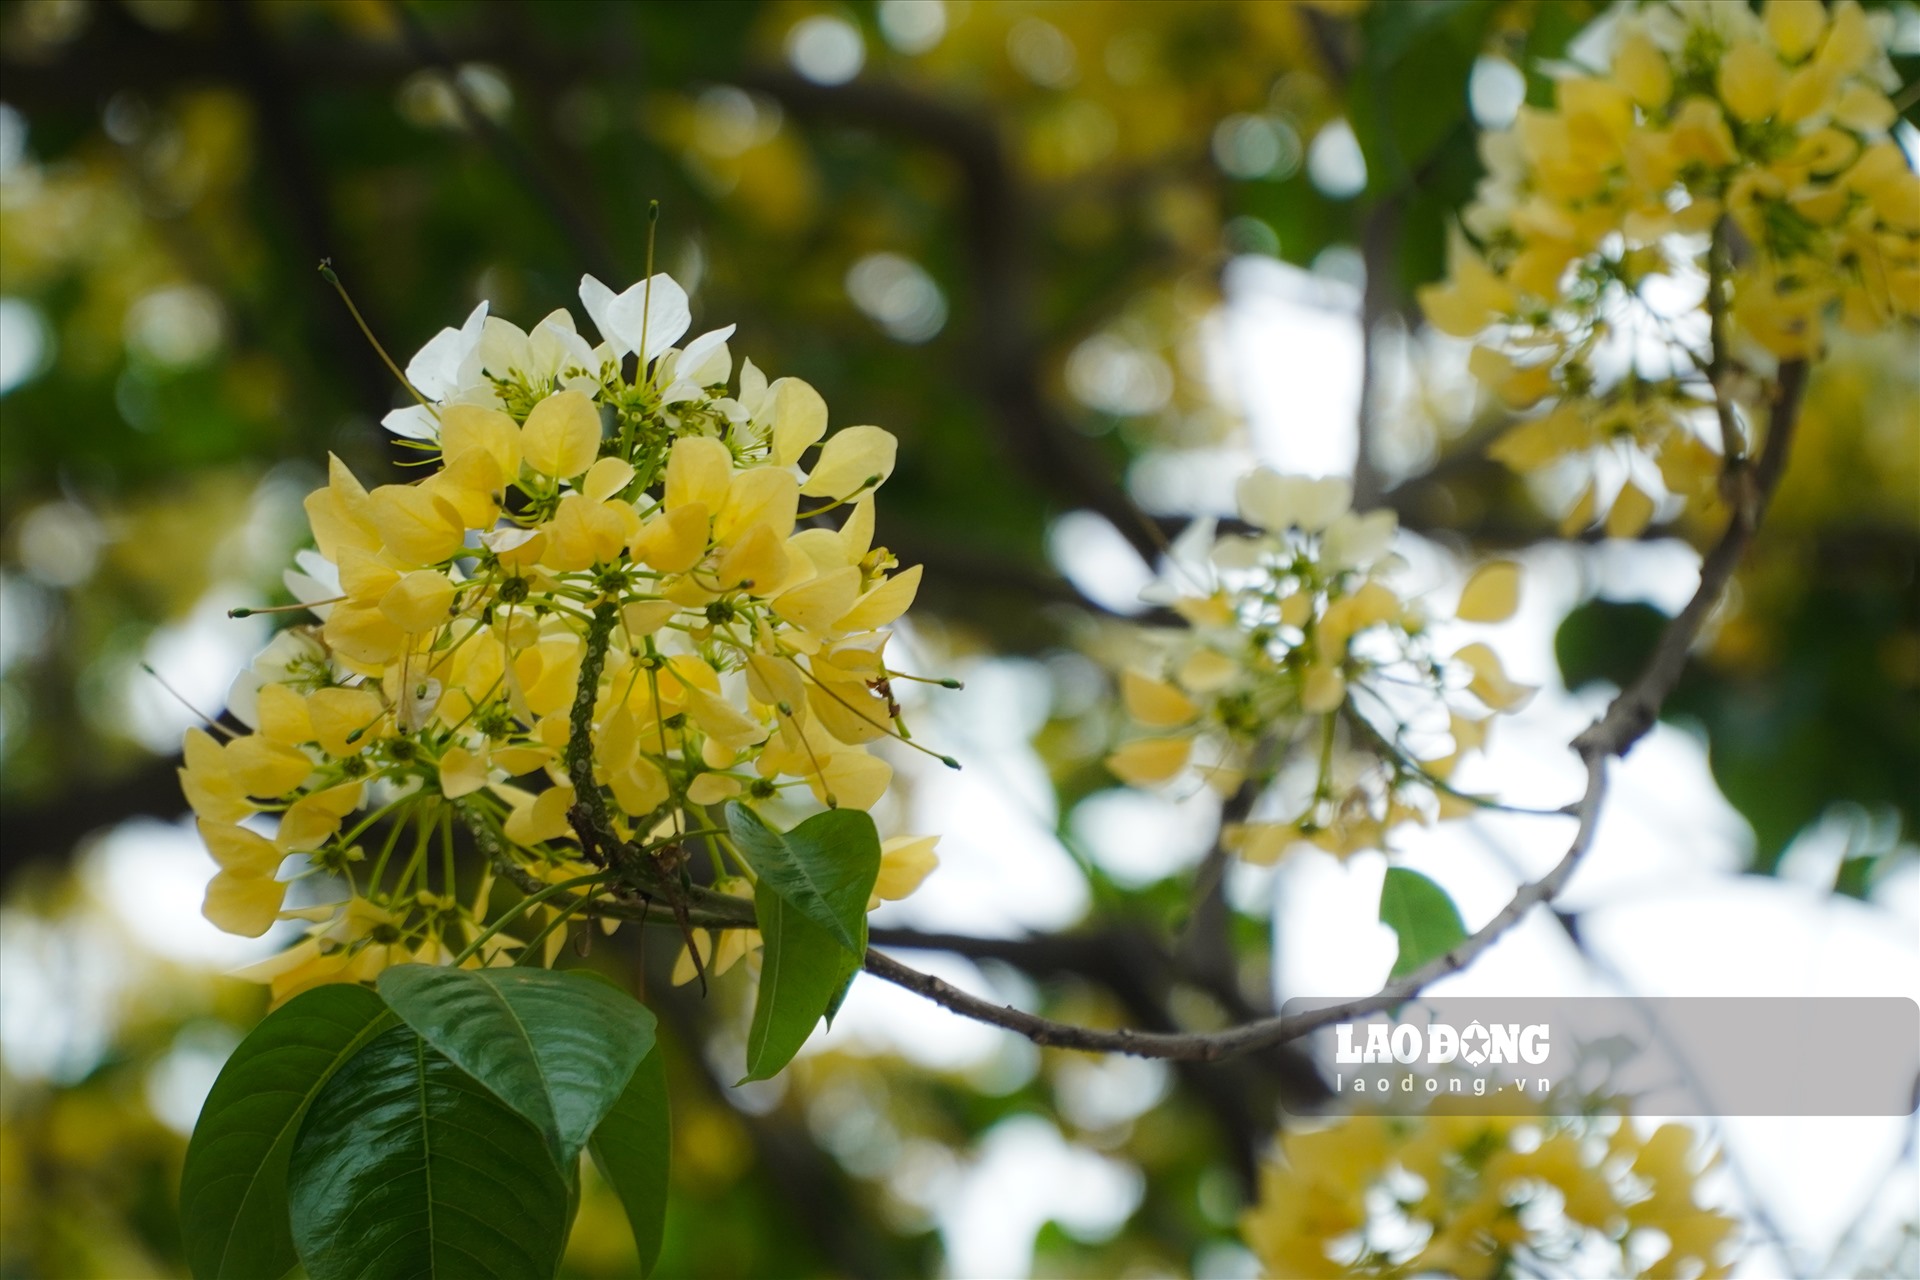 Hoa bún mọc thành từng chùm phía đầu cành, màu hoa vàng, trắng xen lẫn sắc xanh của lá khiến cây càng thêm phần rực rỡ.